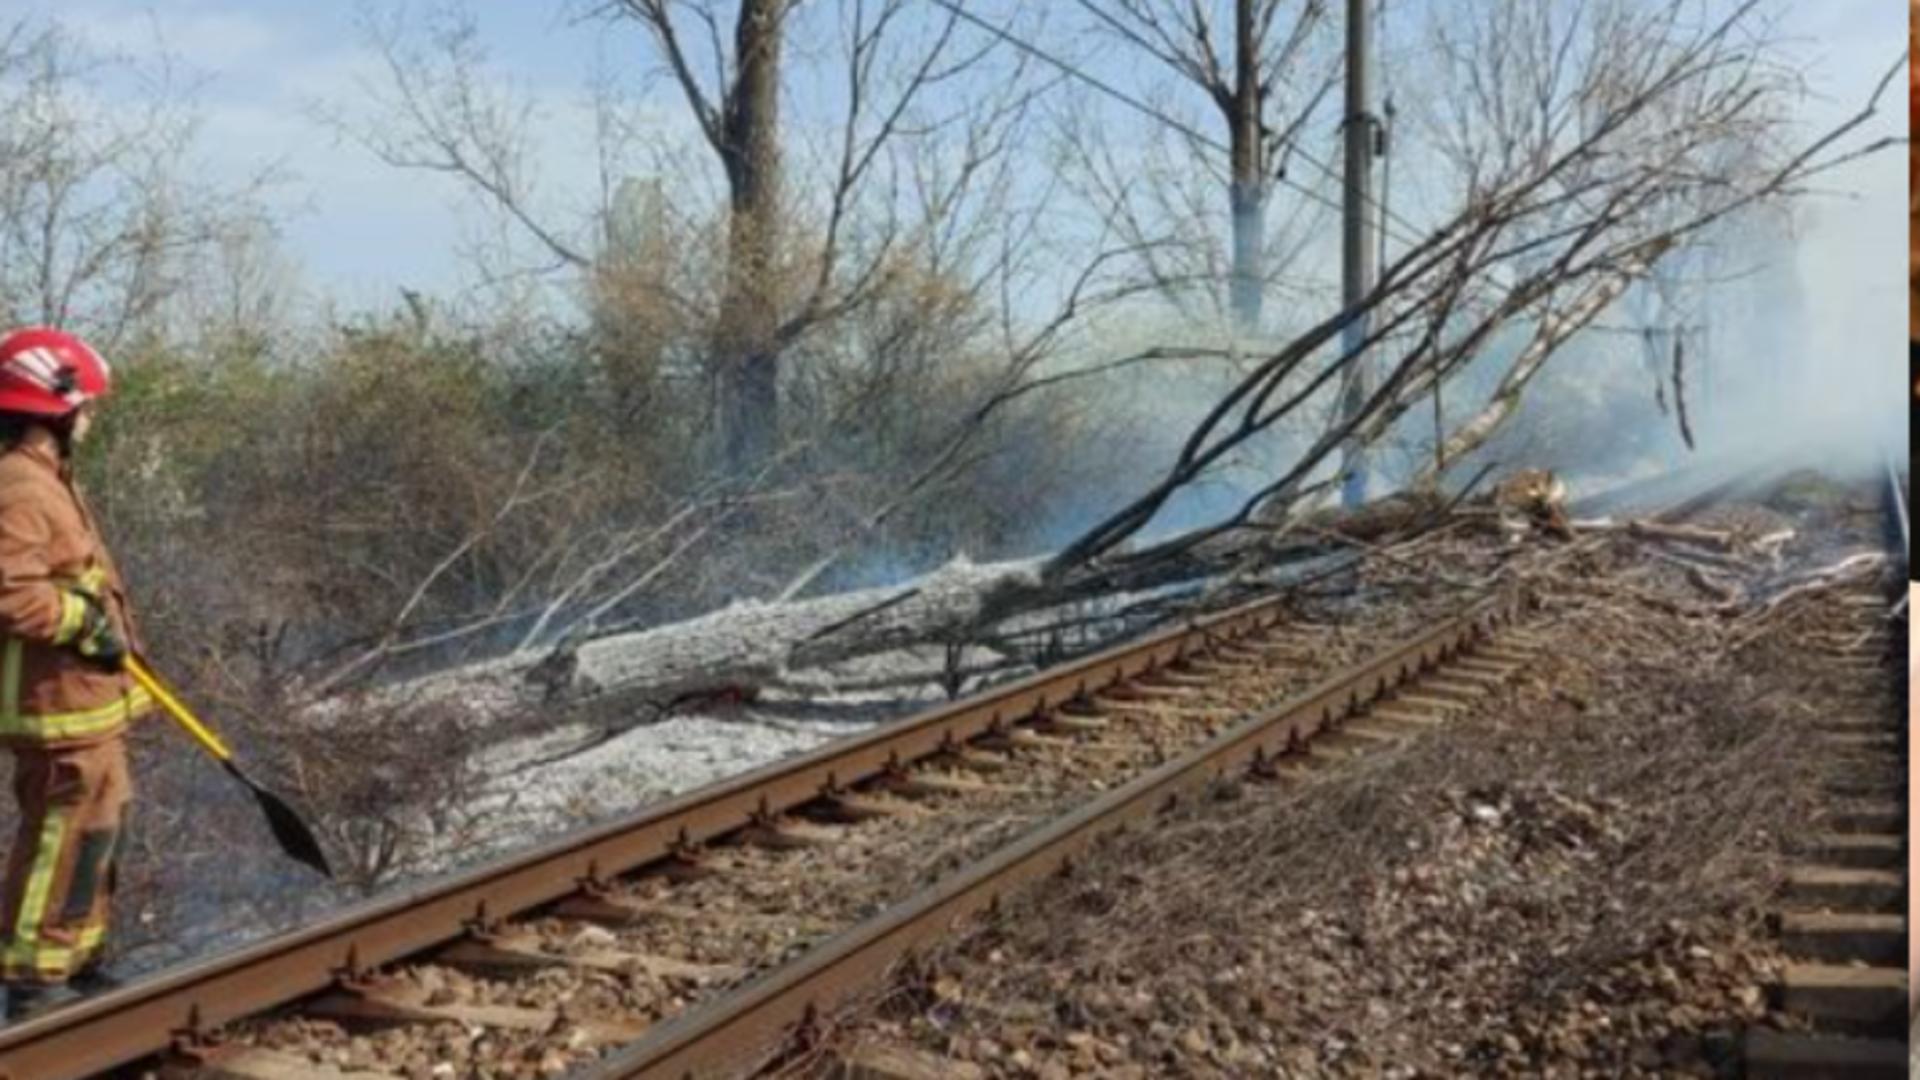 Circulaţie feroviară, oprită temporar între Ploieşti Sud şi Buzău din cauza unui copac căzut pe linie și a unui incendiu izbucnit în apropiere